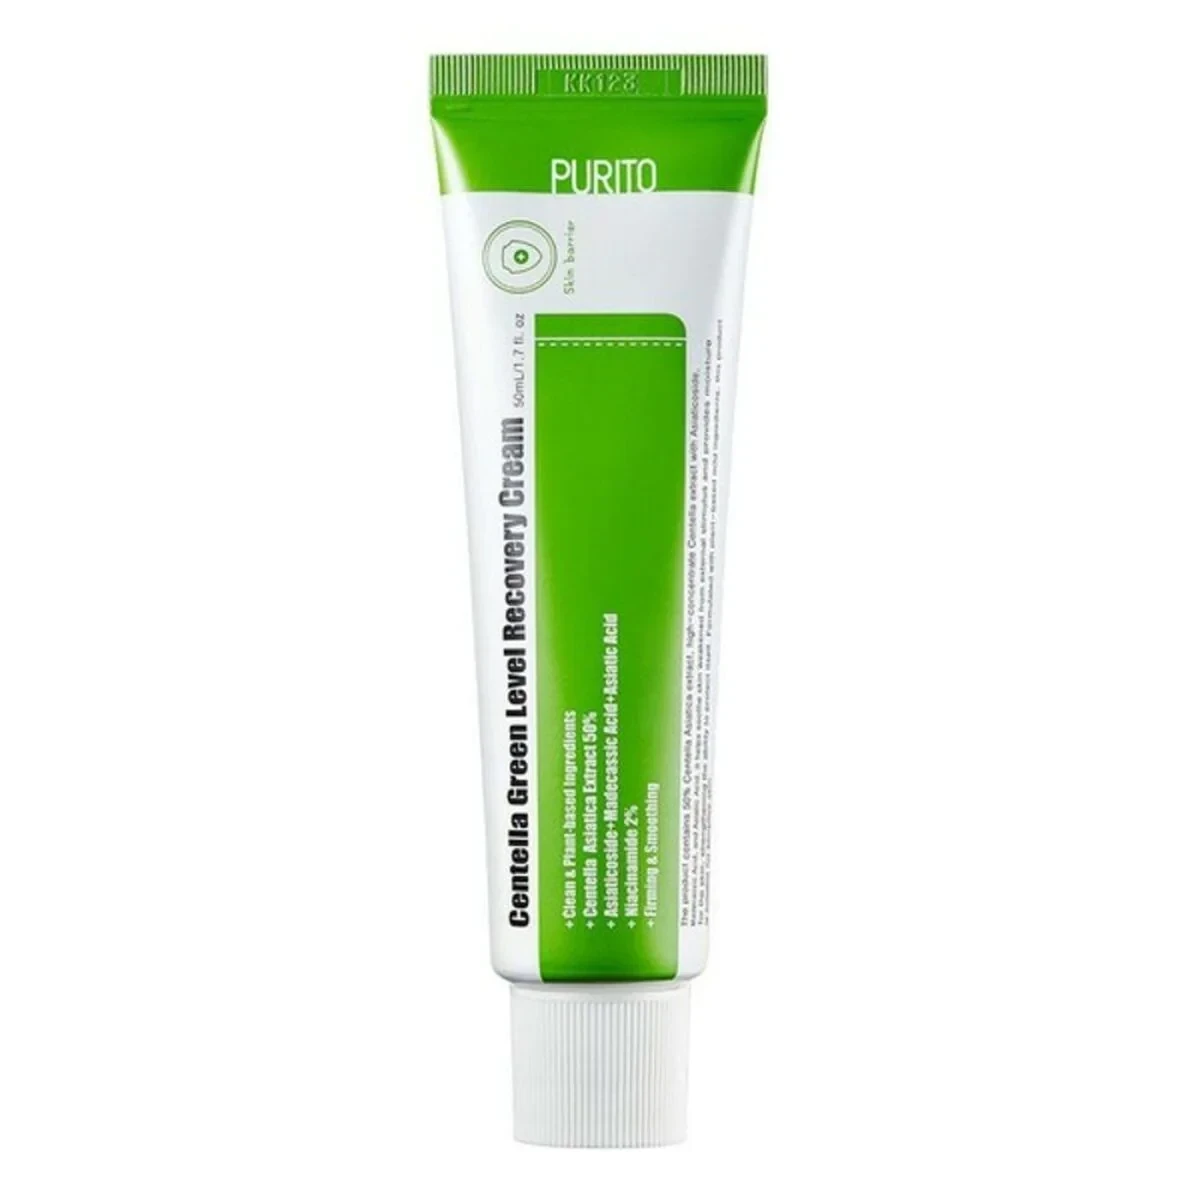 Purito - Centella Green Level Recovery Cream Purito 50 ml